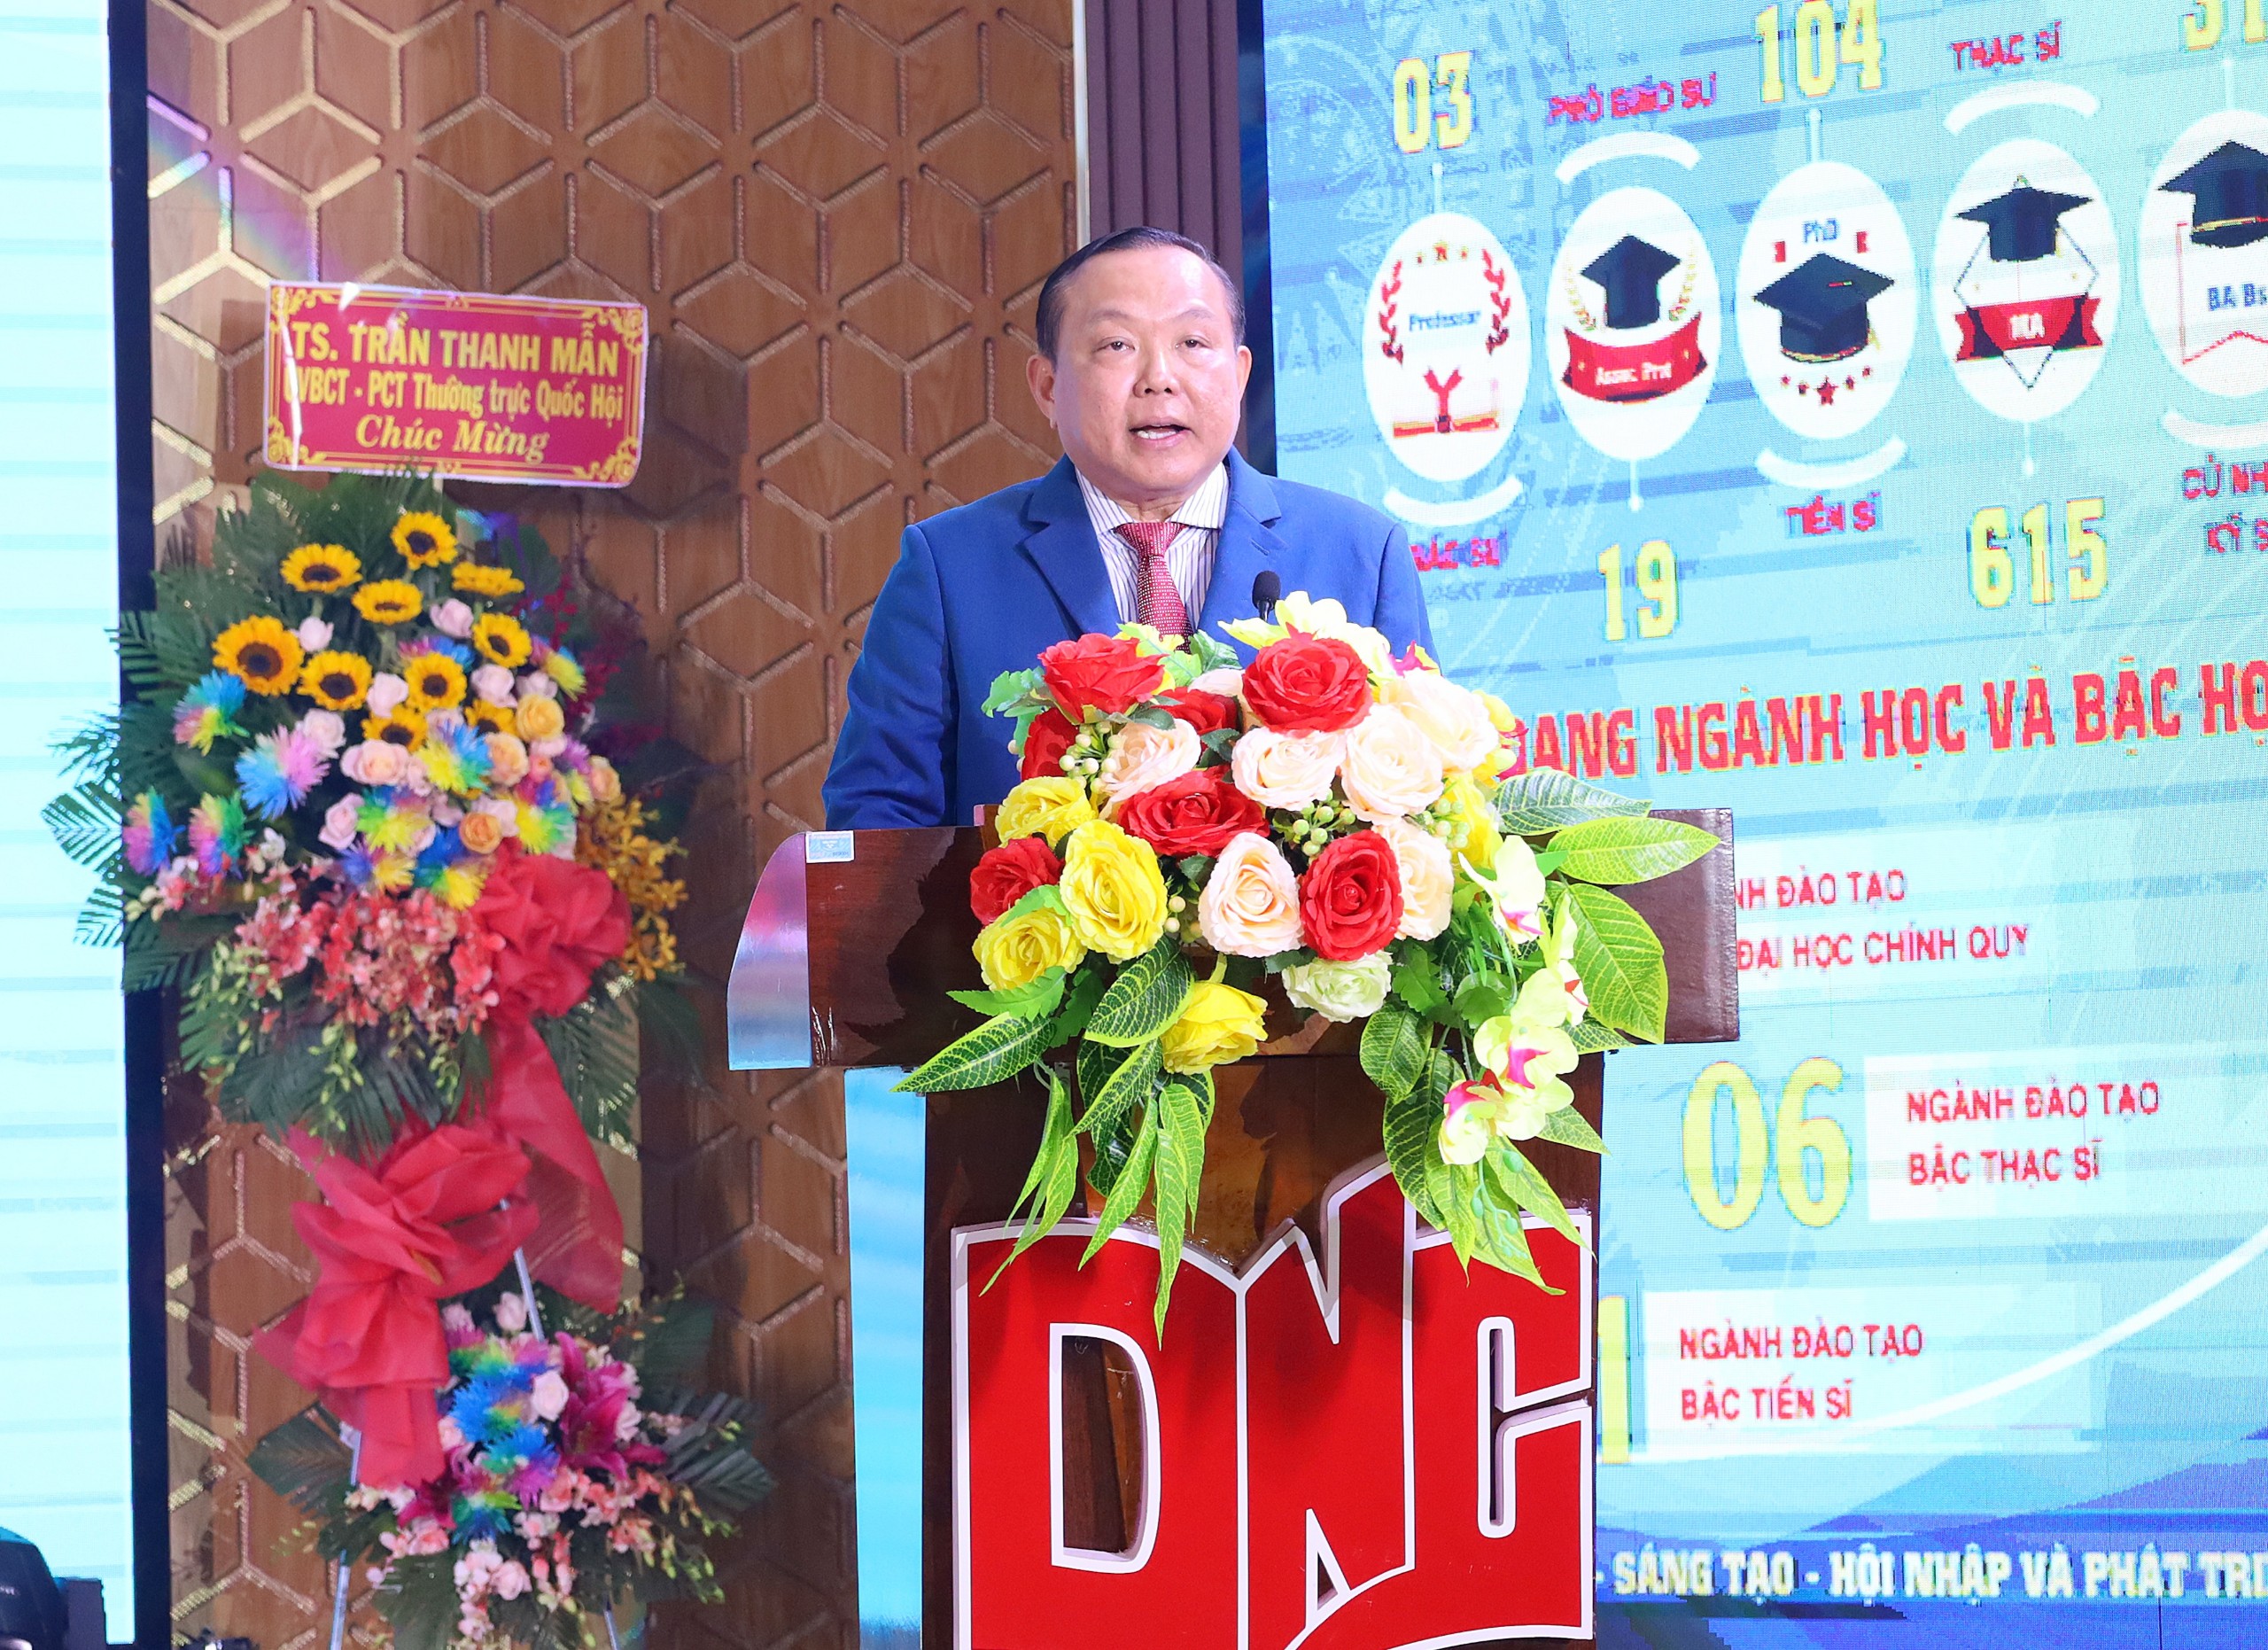 TS-LS. Nguyễn Tiến Dũng - Chủ tịch Hội đồng trường Trường Đại học Nam Cần Thơ phát biểu chào mừng tại buổi lễ.